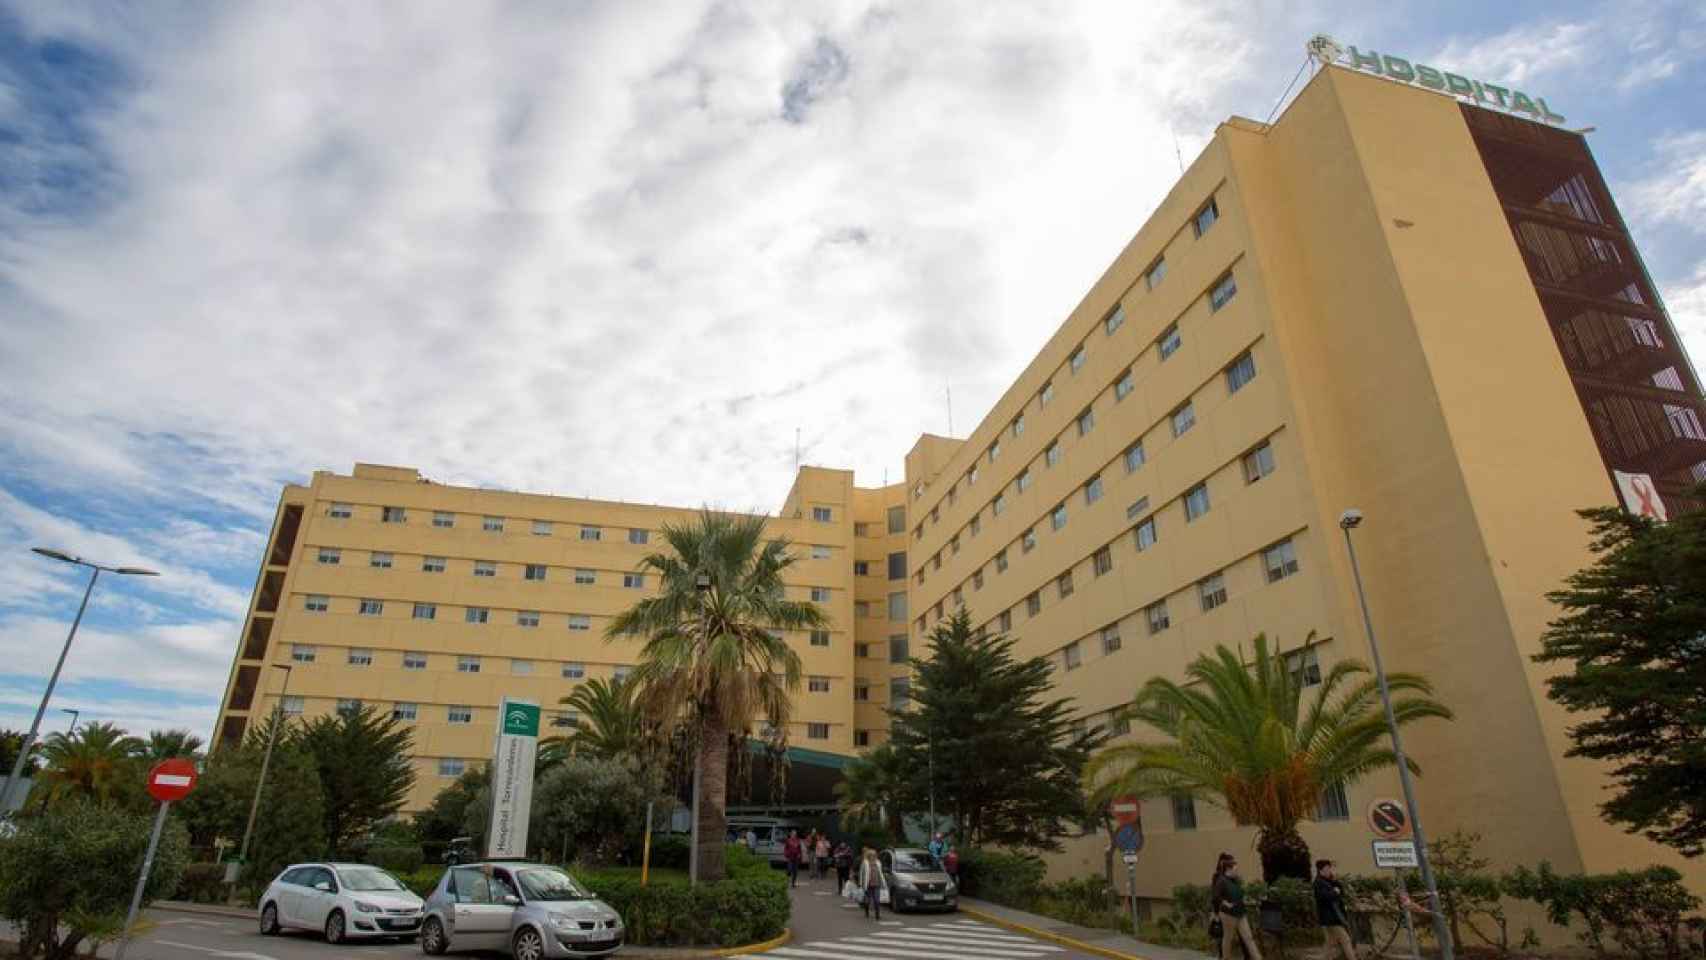 Hospital Torrecárdenas de Almería donde murió José Manuel con solo 29 años.